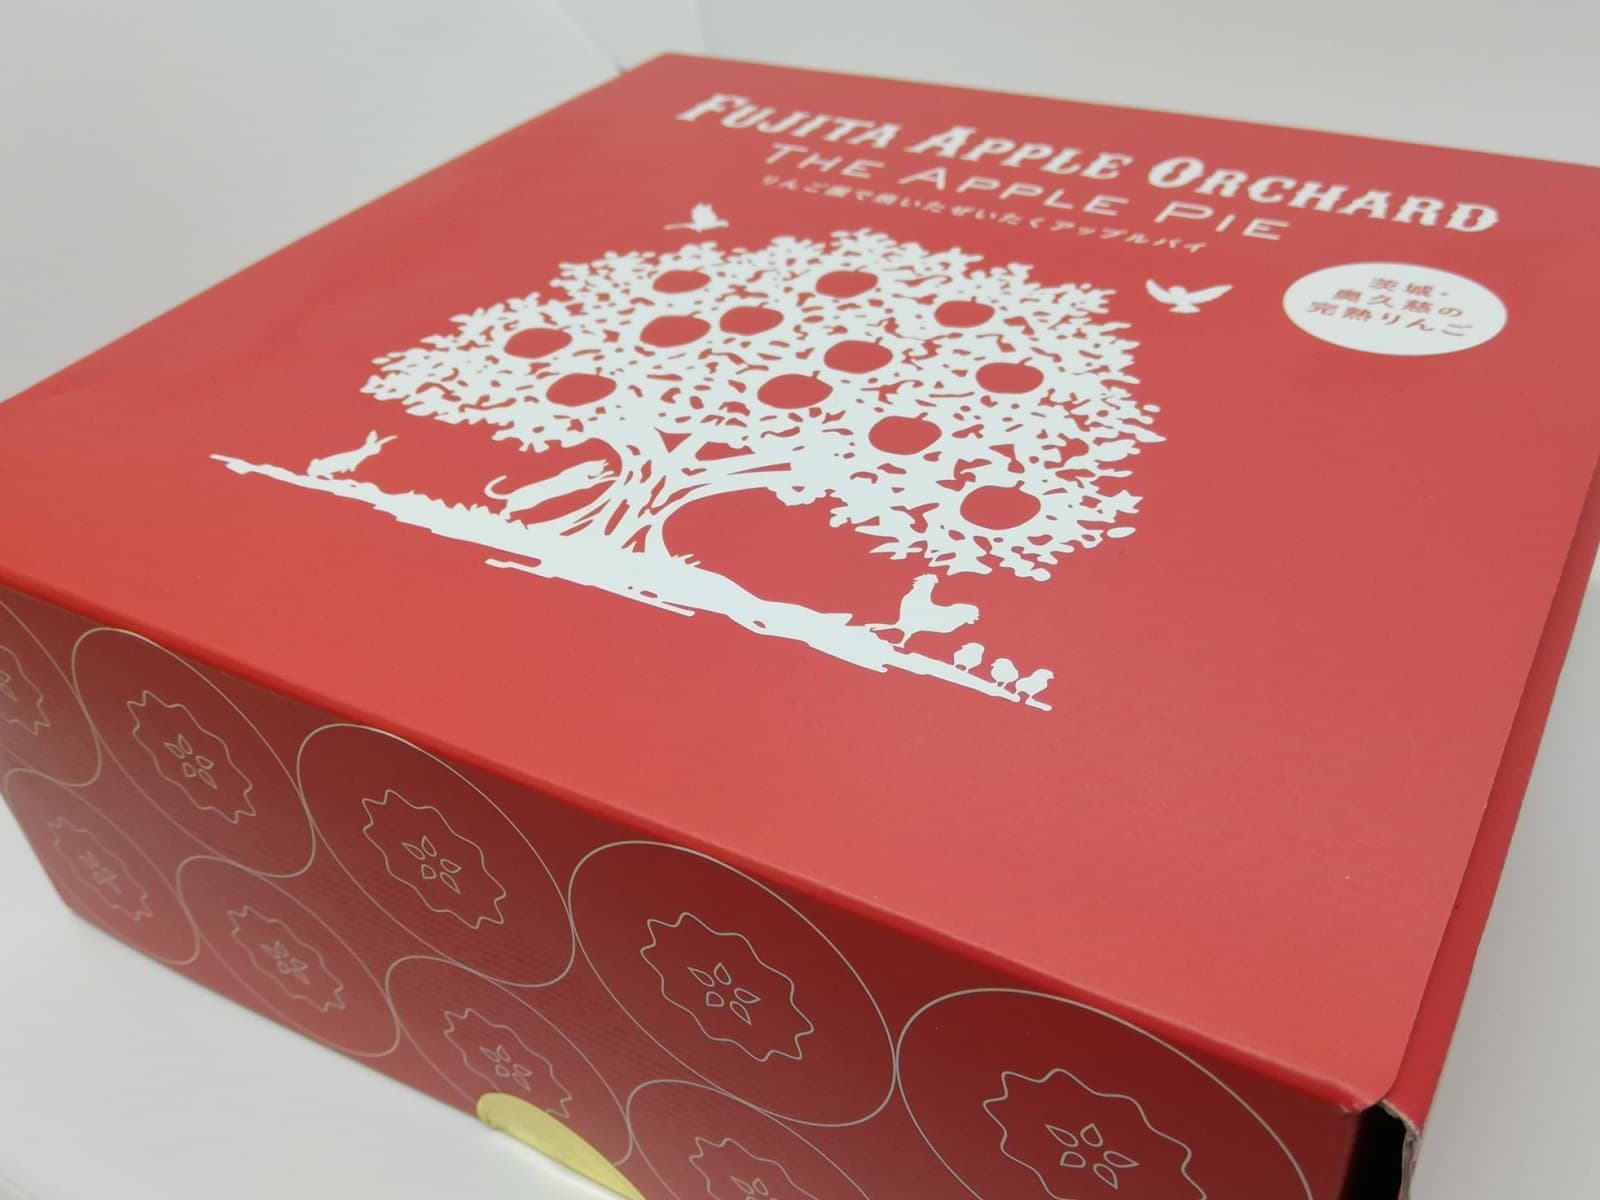 藤田観光りんご園のアップルパイの外箱